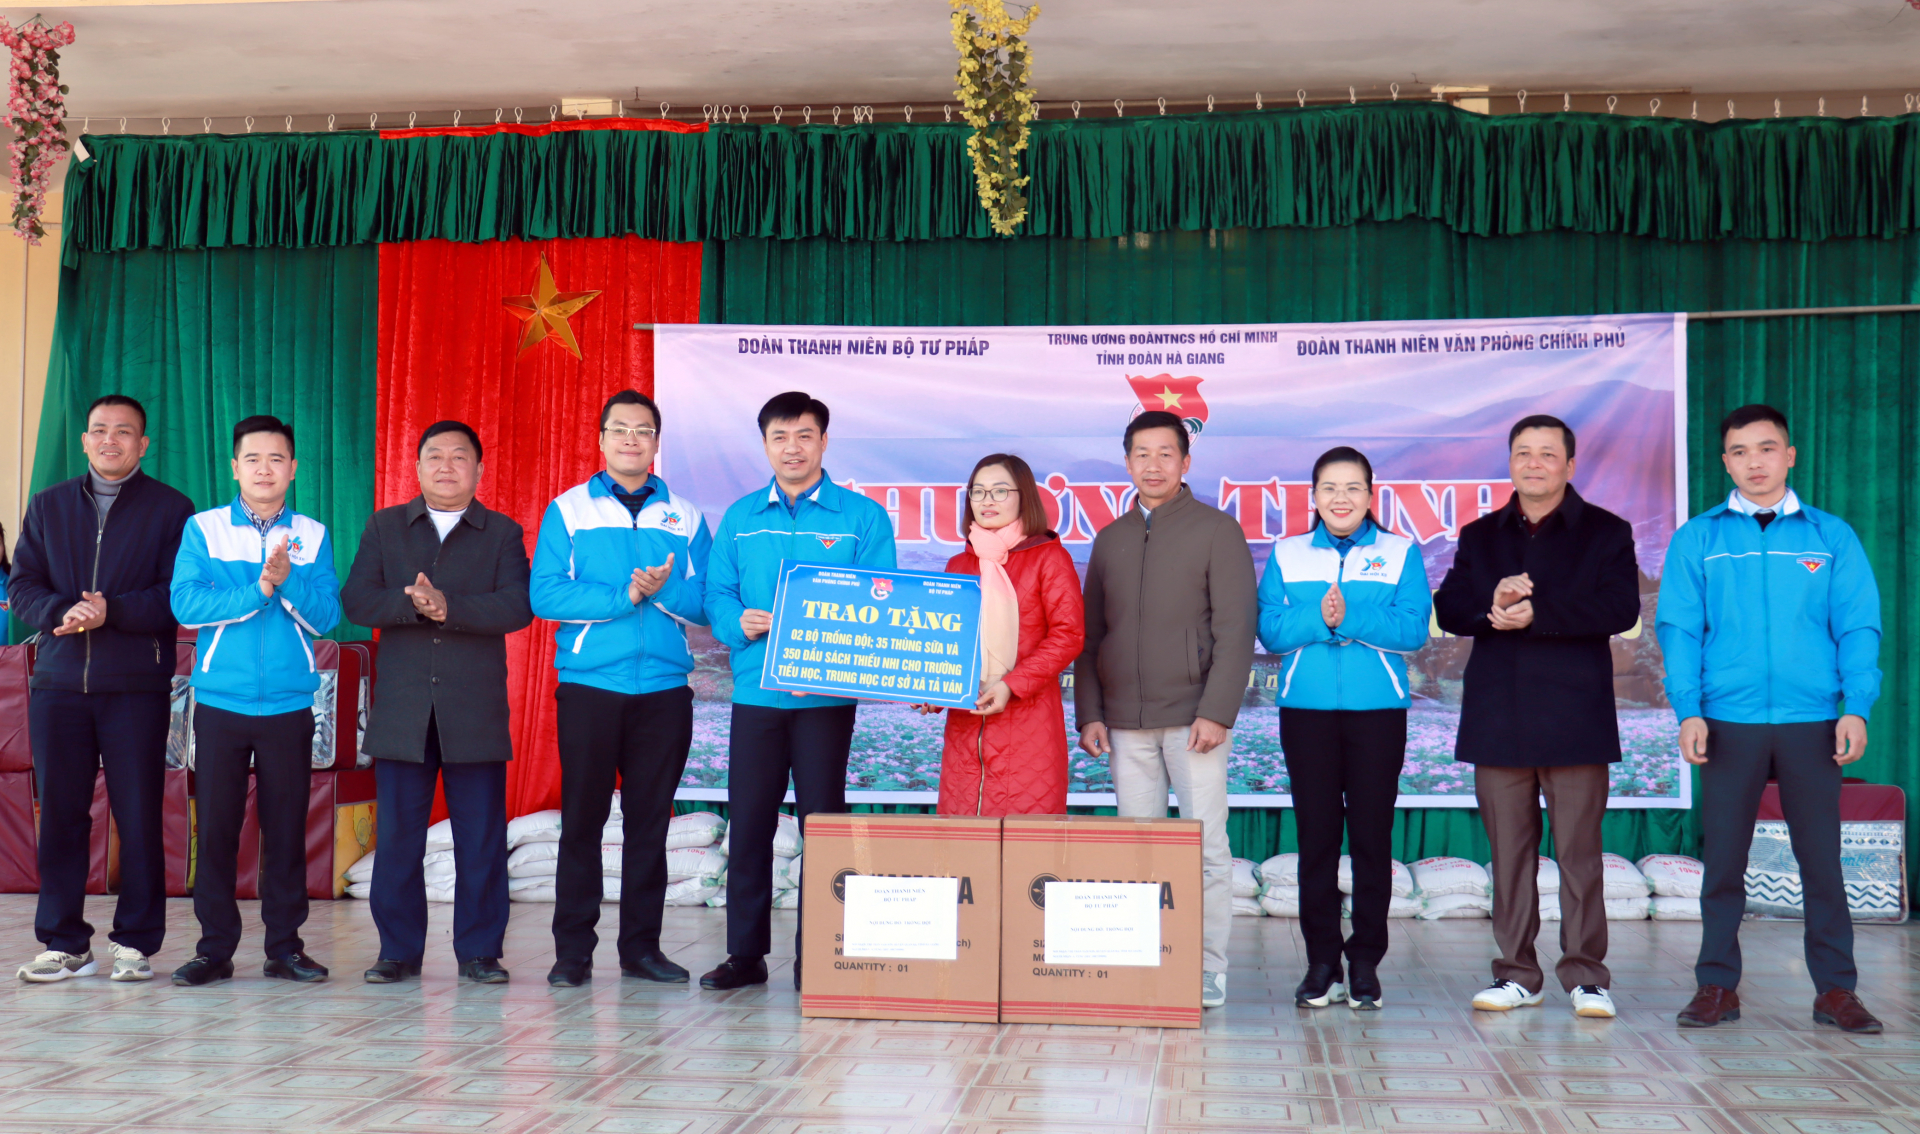 Đoàn Thanh niên Văn phòng Chính phủ và Đoàn Thanh niên Bộ Tư pháp tặng quà cho Trường Phổ thông Dân tộc Bán trú Tiểu học và THCS xã Tả Ván.